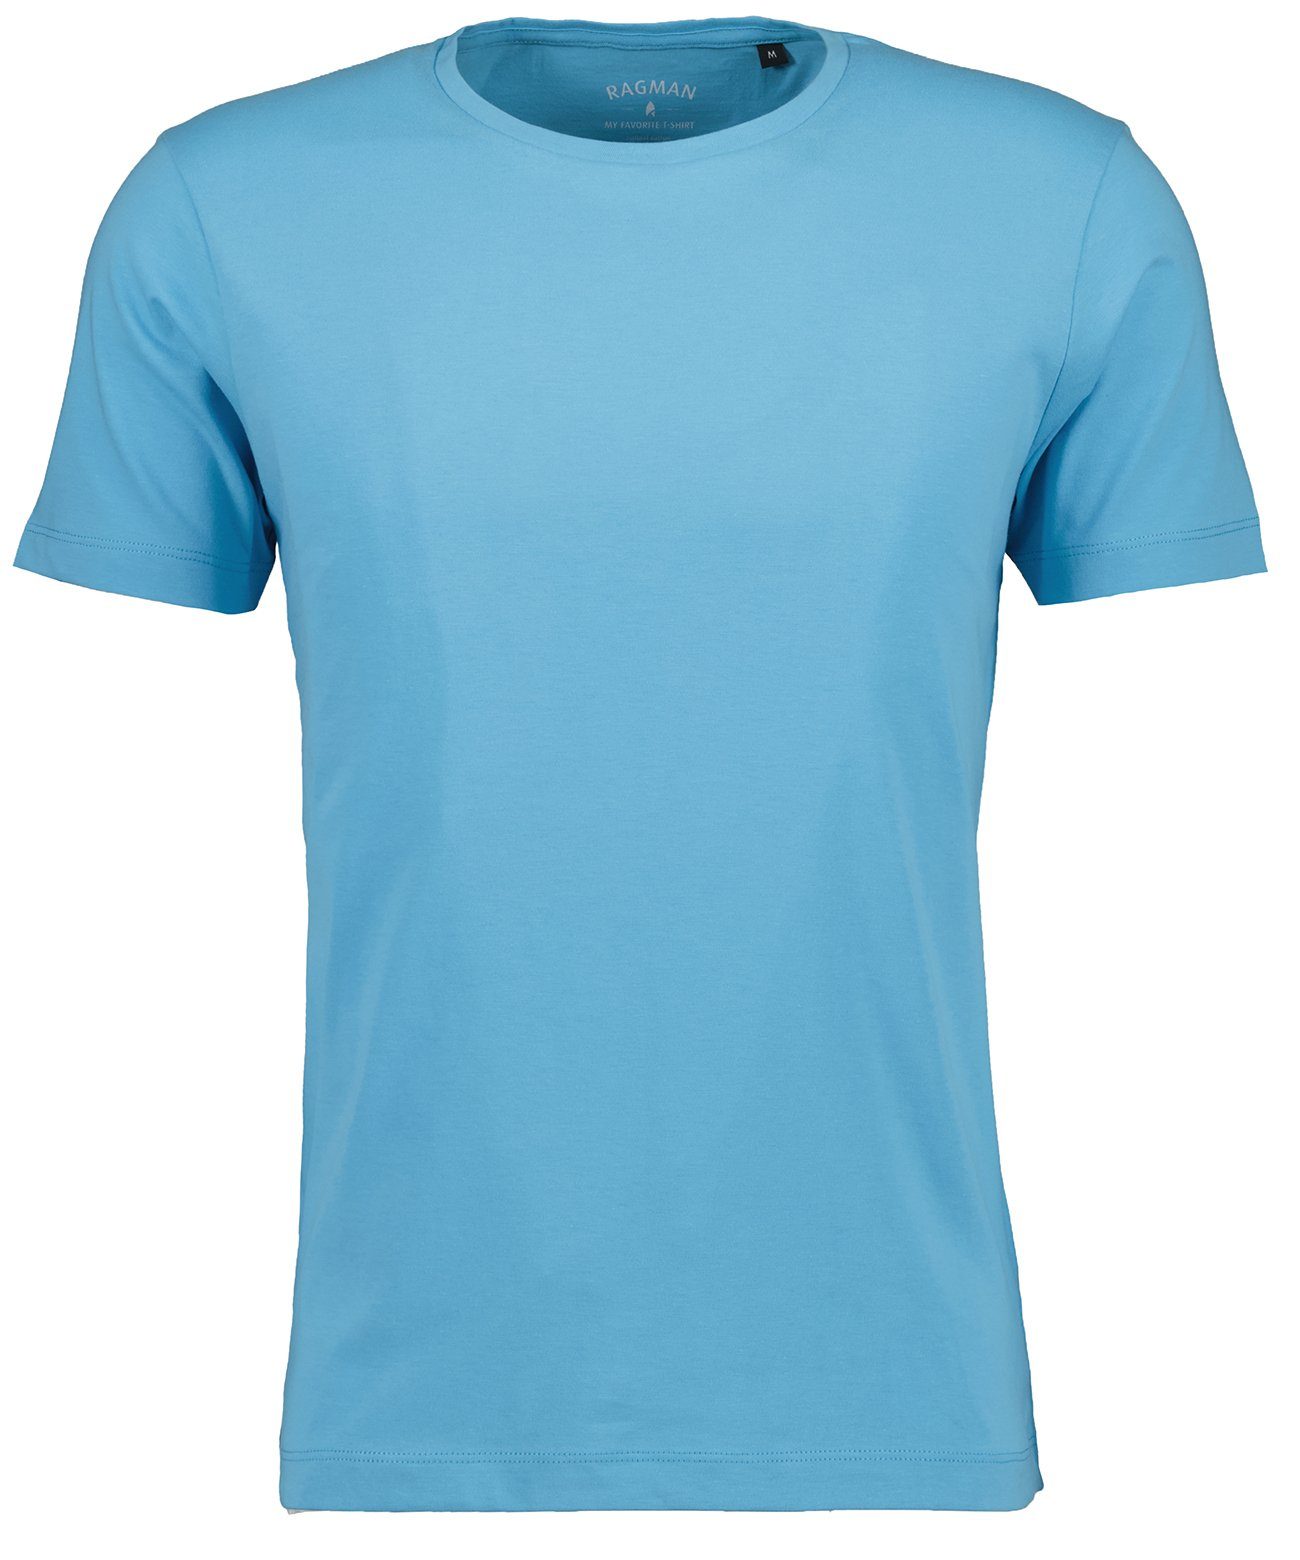 RAGMAN T-Shirt Blau-Melange-703